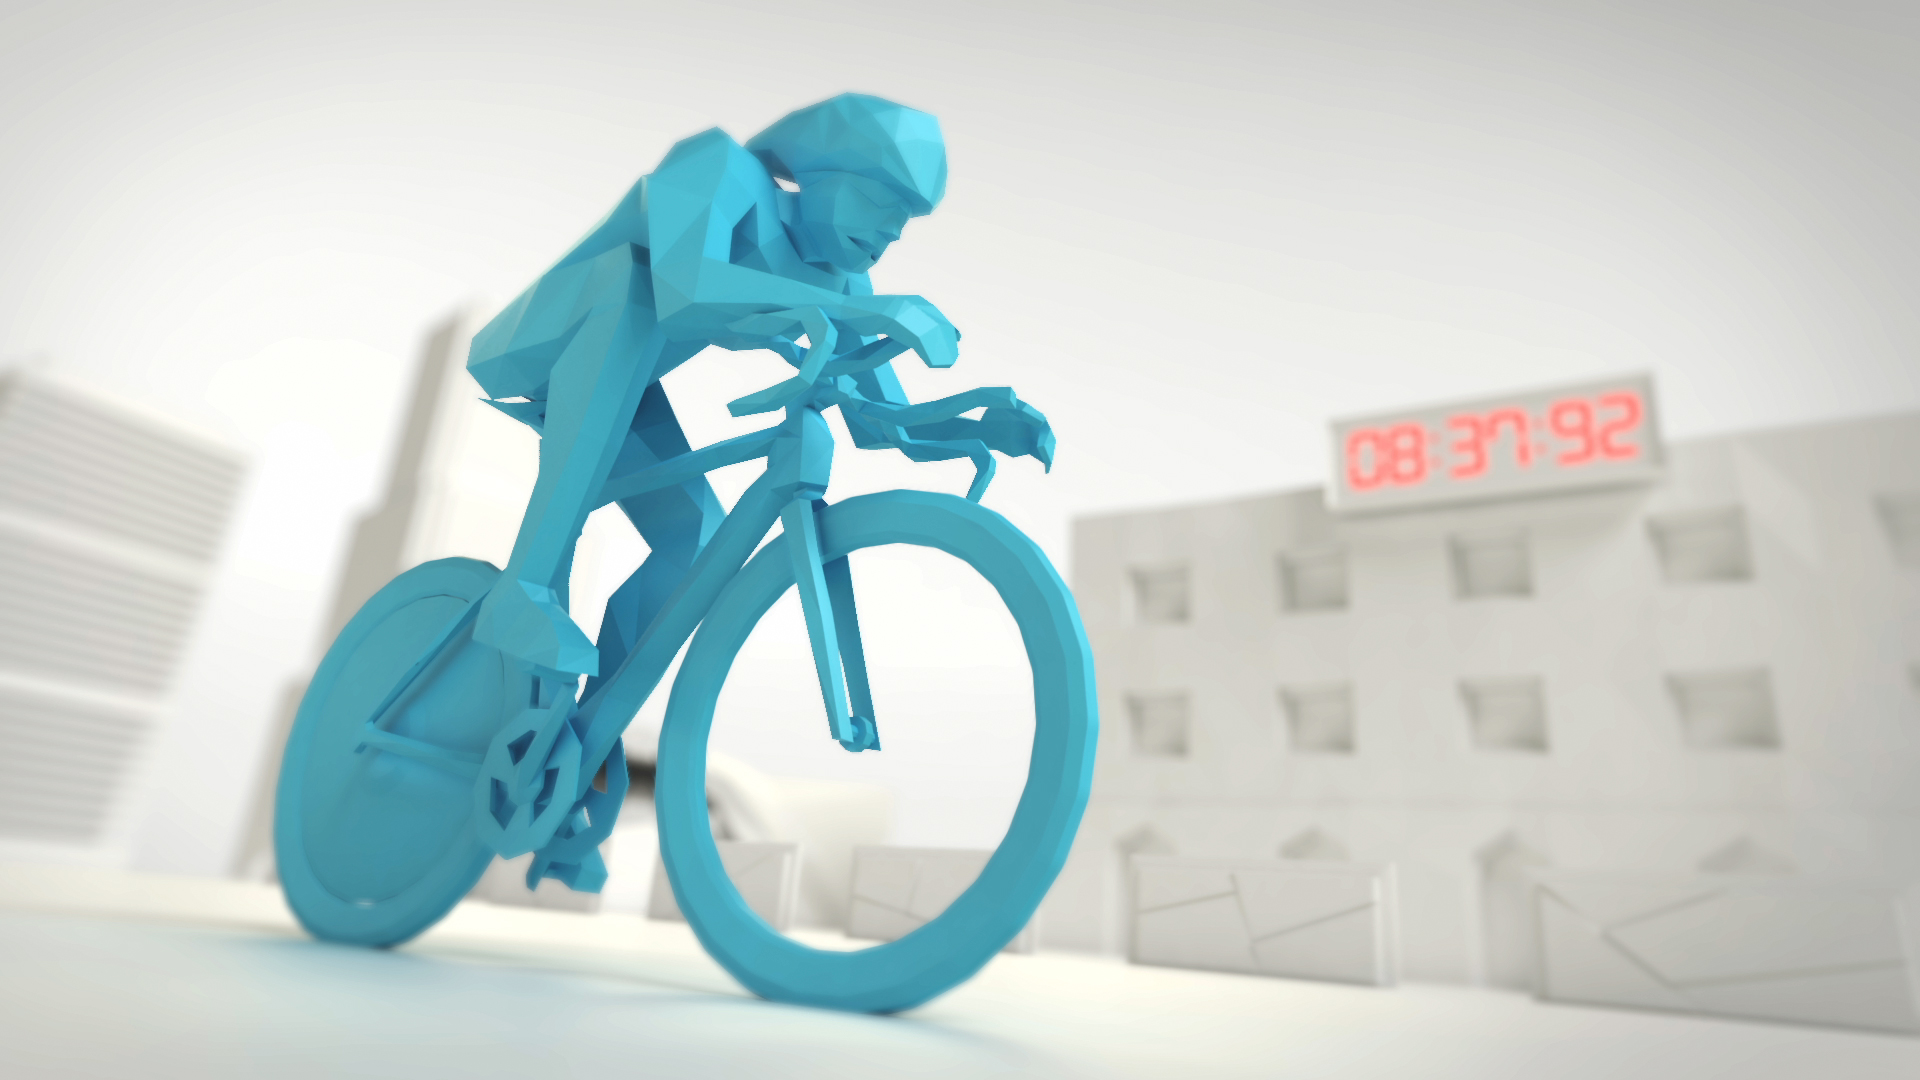 Piezas promocionales para anunciantes durante el tour de francia 2016, diseñadas y creadas en 3D con animación